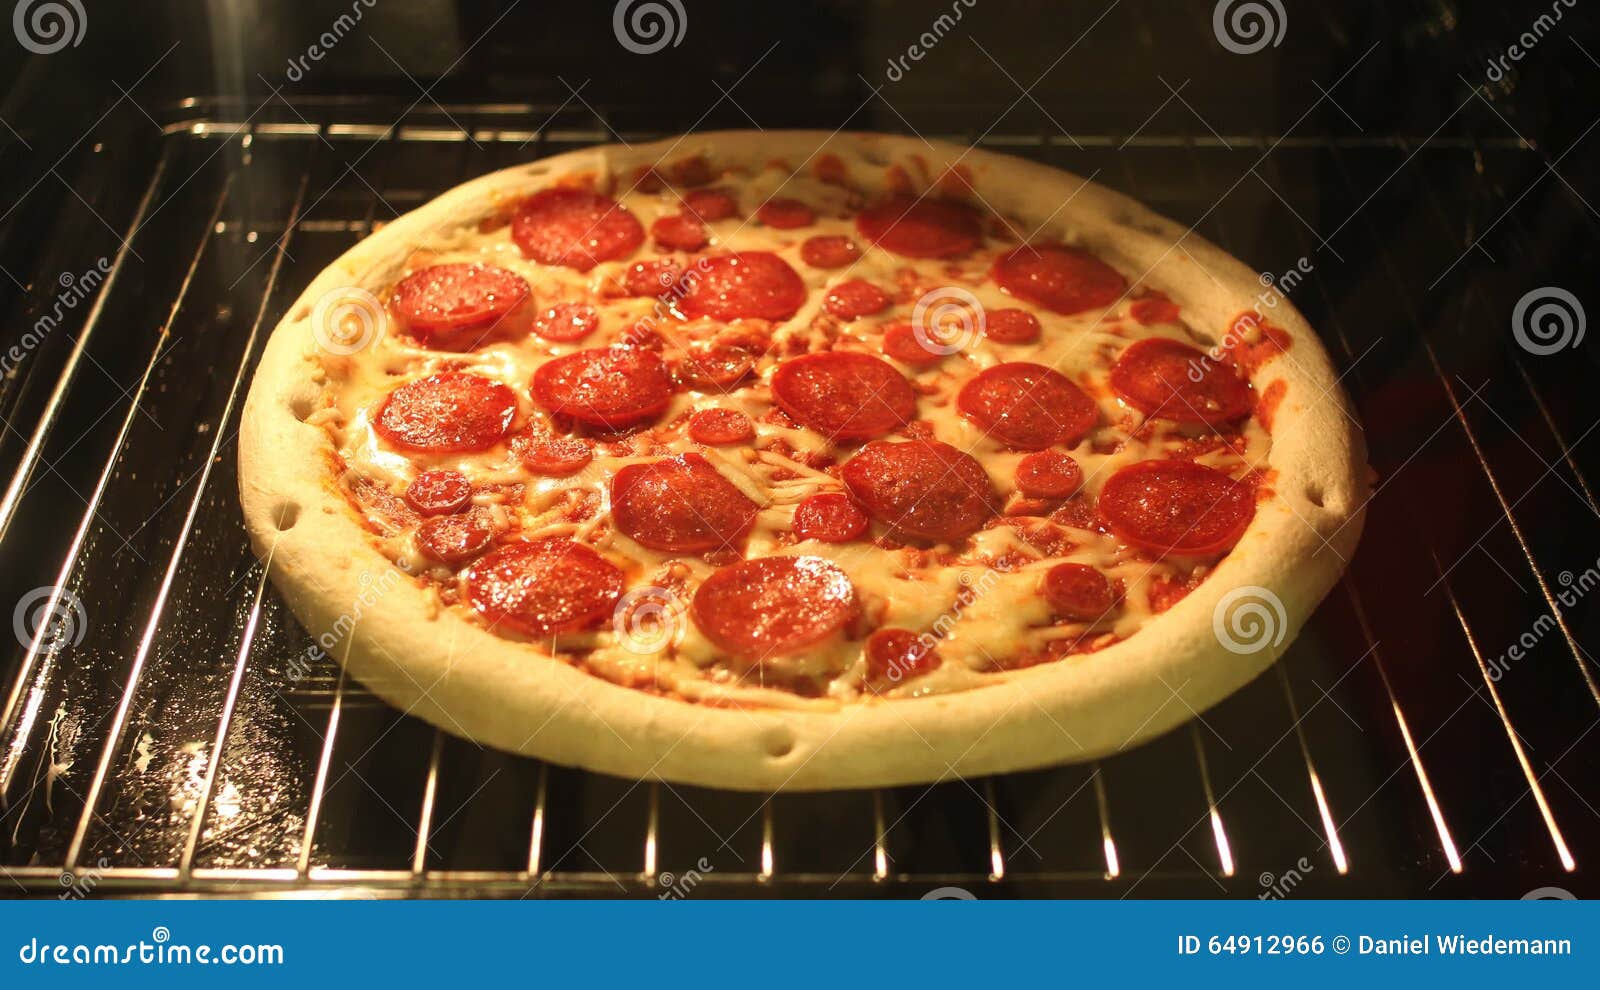 сколько градусов нужно чтобы приготовить пиццу в духовке фото 45